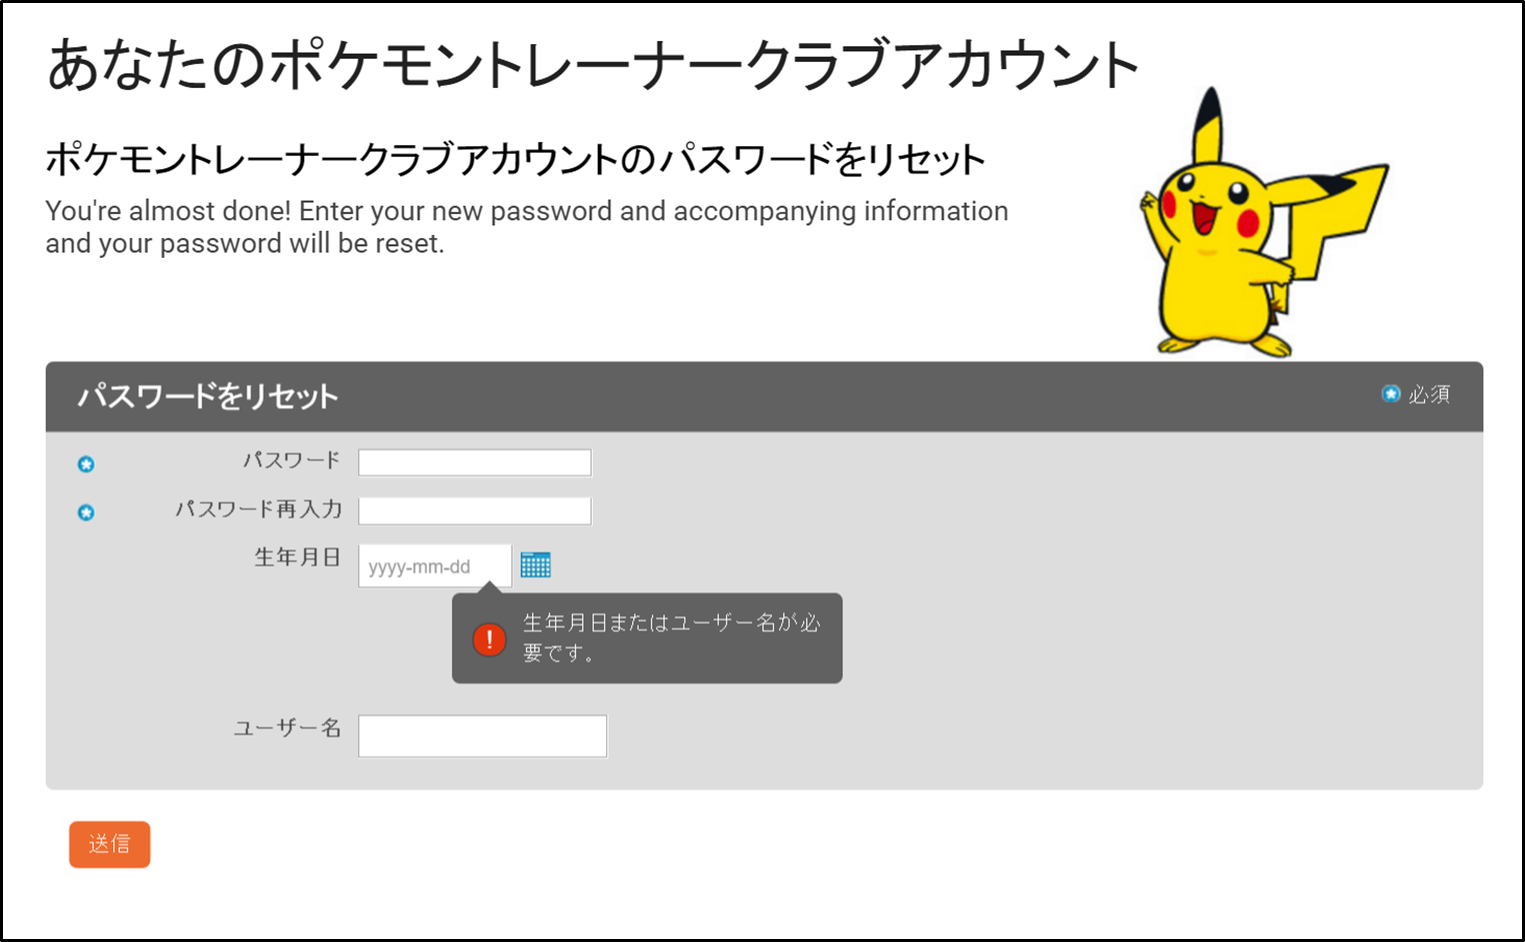 ポケモントレーナークラブアカウントに関するよくあるお問い合わせ Pokemon Go 公式サイト